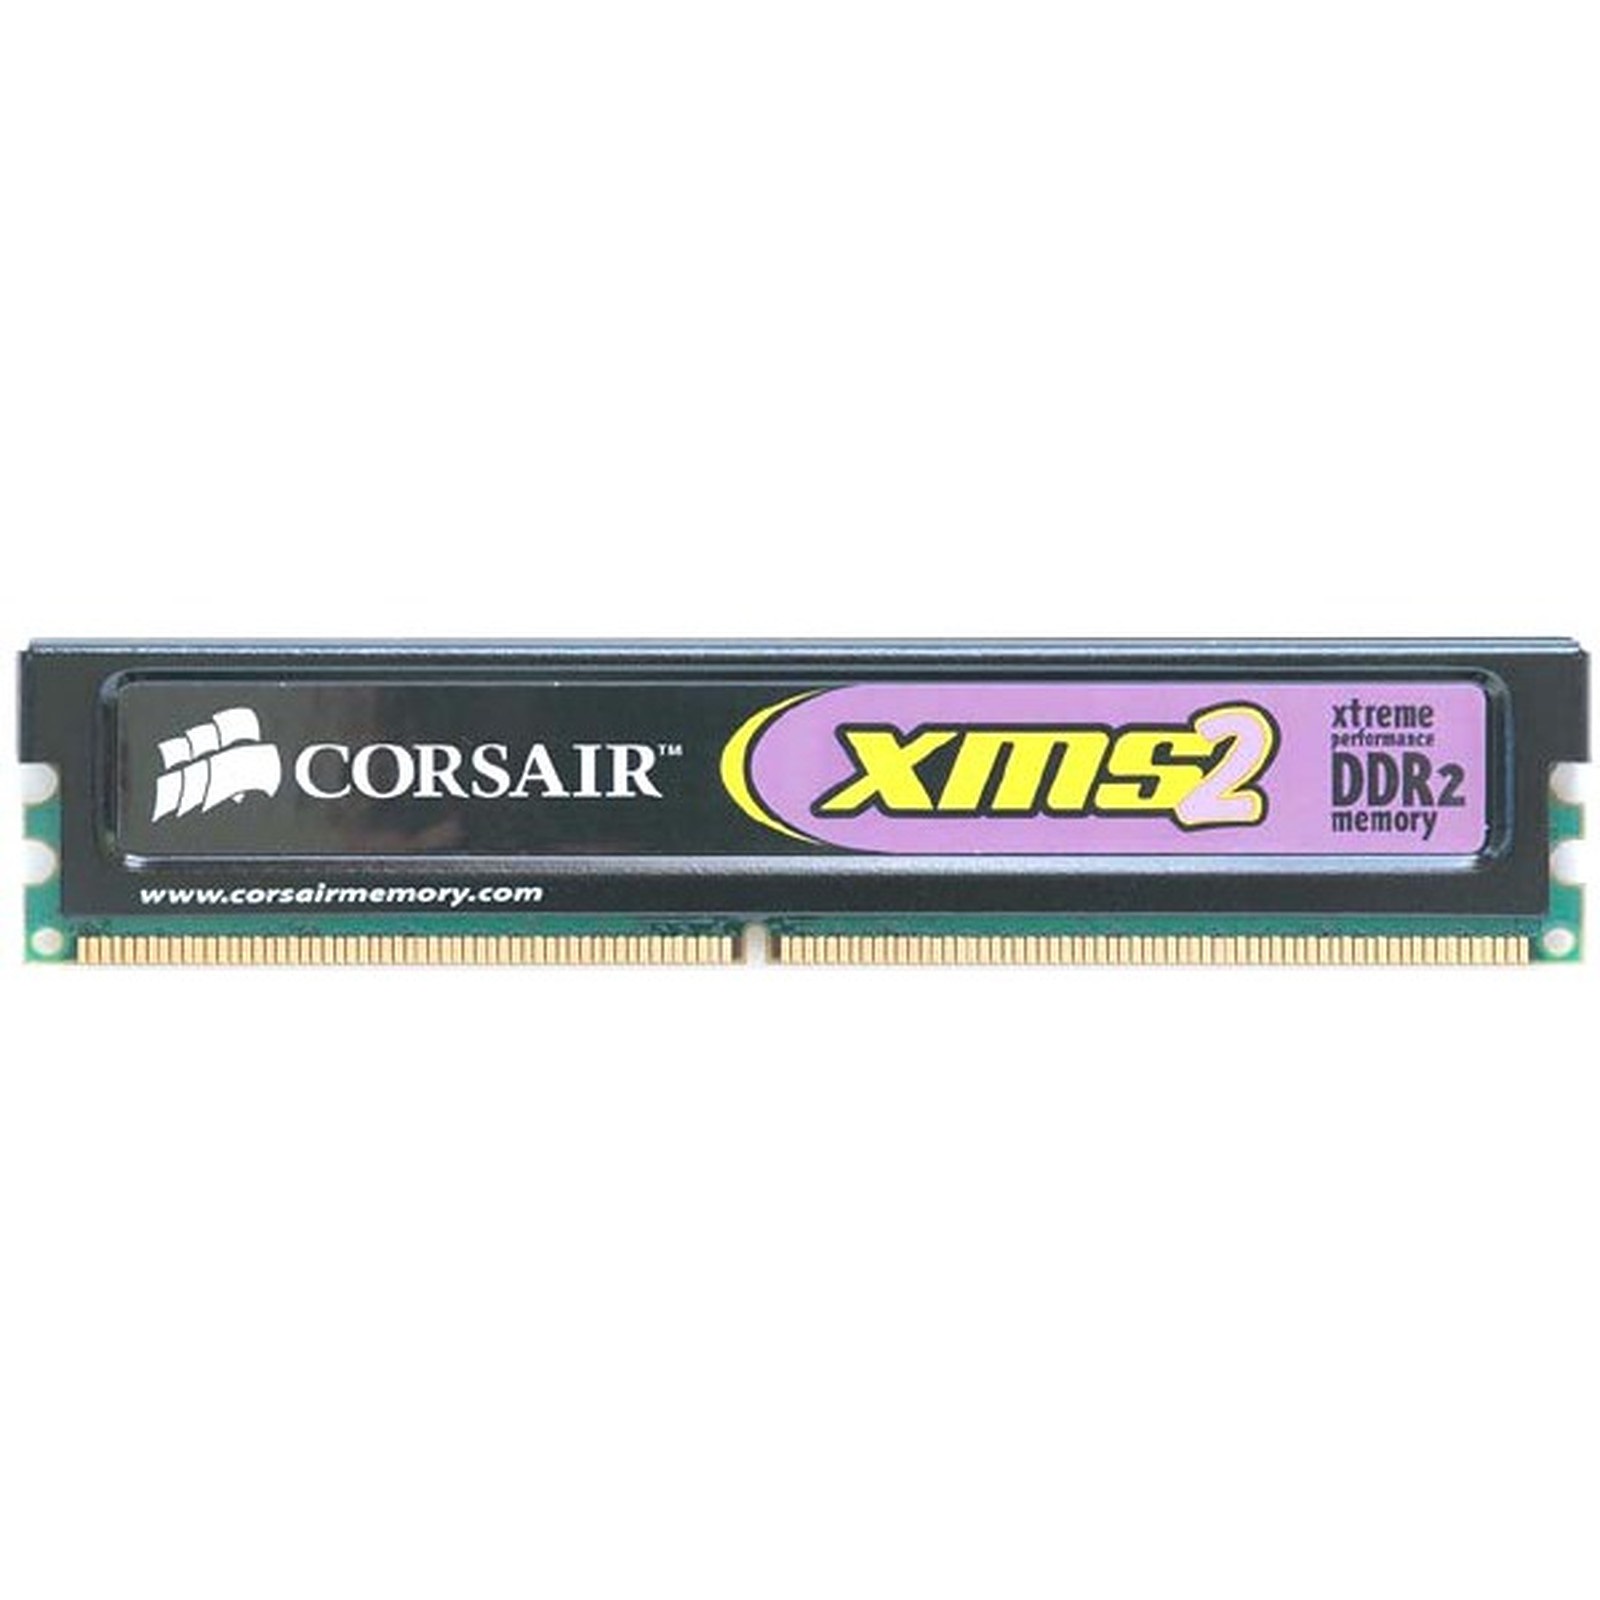 رم دسکتاپ DDR2 تک کاناله 800 مگاهرتز CL5 کورسیر مدل CM2X1024 6400 ظرفیت 1 گیگابایت